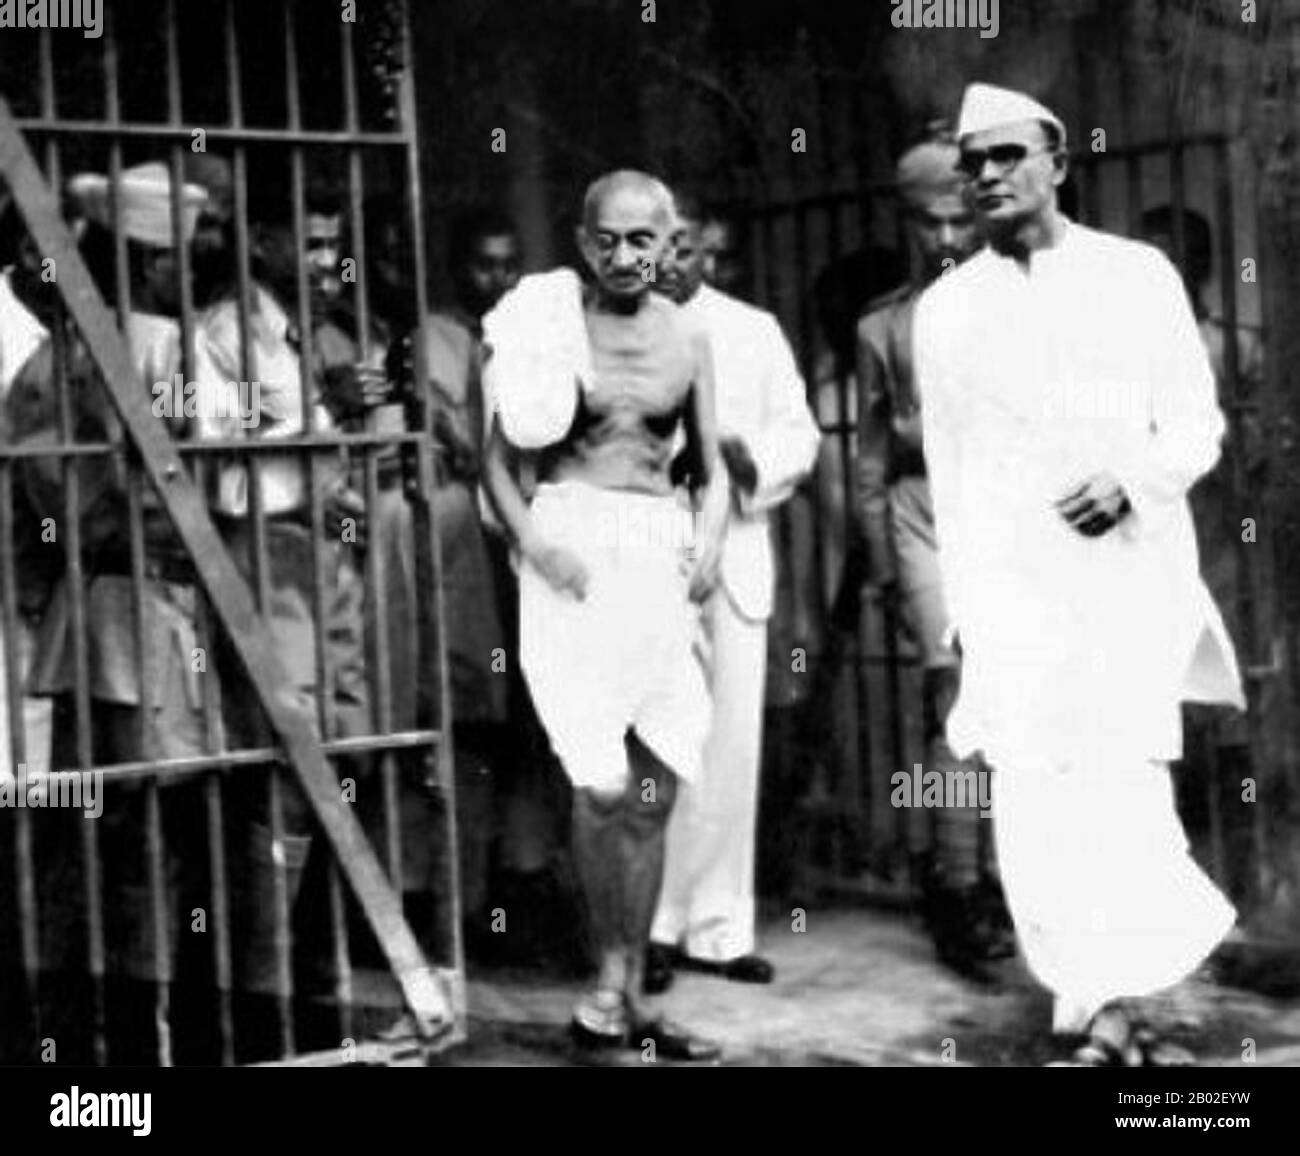 Mohandas Karamchand Gandhi (2. Oktober 1869 - 30. Januar 1948) war der führende politische und ideologische Führer Indiens während der indischen Unabhängigkeitsbewegung. Er war Wegbereiter für Satyagraha. Dies ist definiert als Widerstand gegen die Tyrannei durch massenhaften zivilen Ungehorsam, eine Philosophie, die fest auf Ahimsa gegründet ist, oder völlige Gewaltlosigkeit. Dieses Konzept half Indien, Unabhängigkeit zu erlangen und inspirierte Bewegungen für Bürgerrechte und Freiheit auf der ganzen Welt. Gandhi wird oft als Mahatma Gandhi oder "Große Seele" bezeichnet, ein Honoratior, der zuerst von Rabindranath Tagore auf ihn angewendet wurde. In Indien wird er auch Bapu (Guj Stockfoto